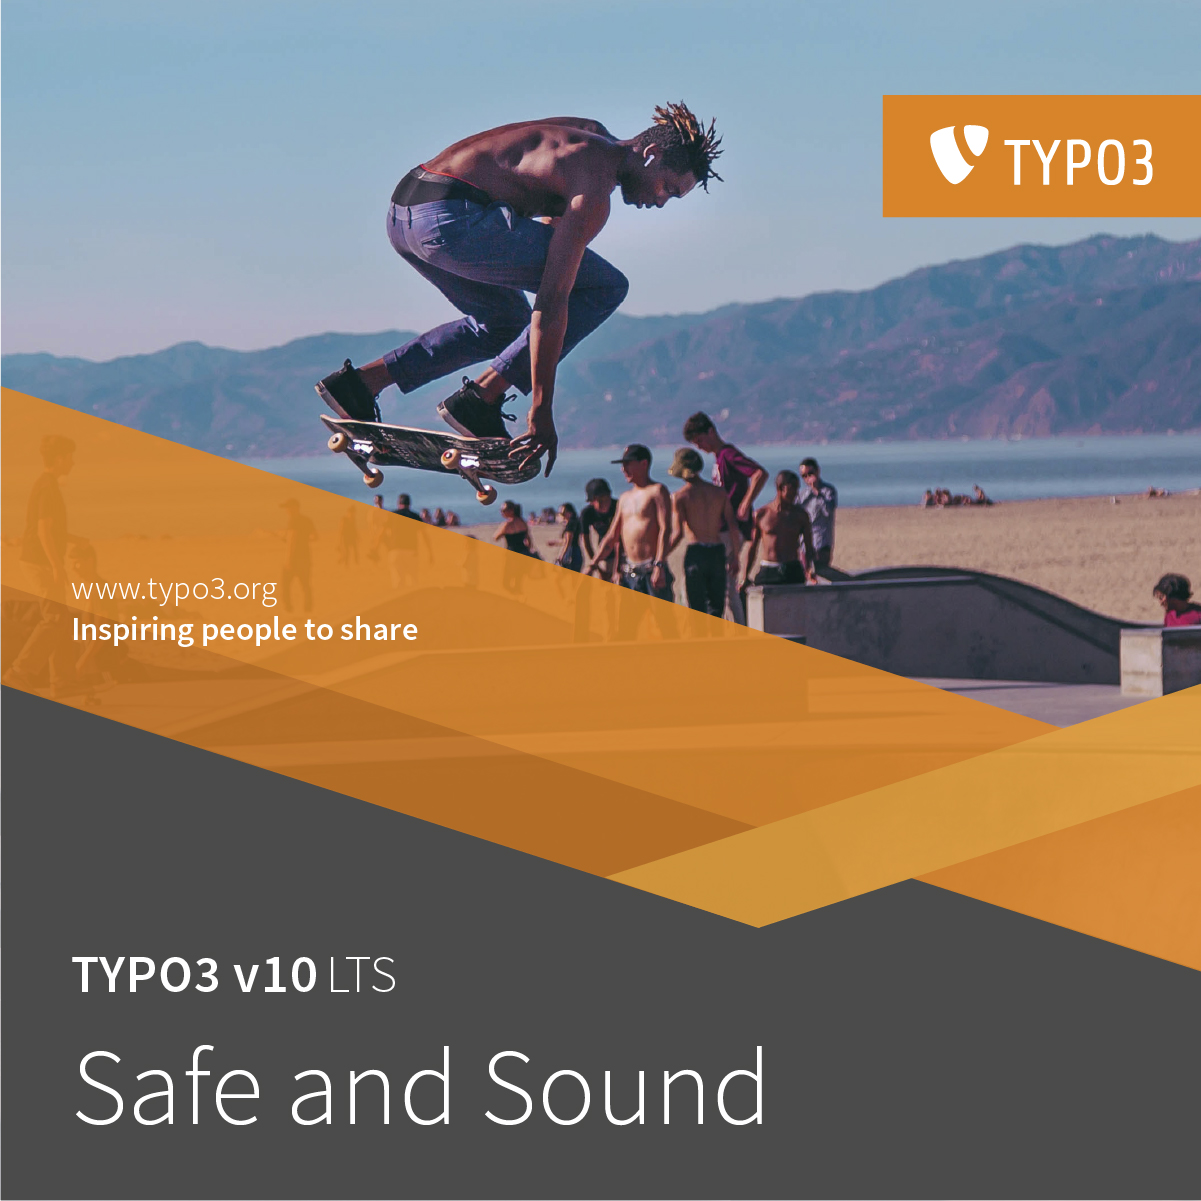 Ein Marketingbild zur Version 10 von Typo3, auf dem im oberen Bereich eine Person skatet und im unteren Bereich groß die Worte Safe and Sound stehen.